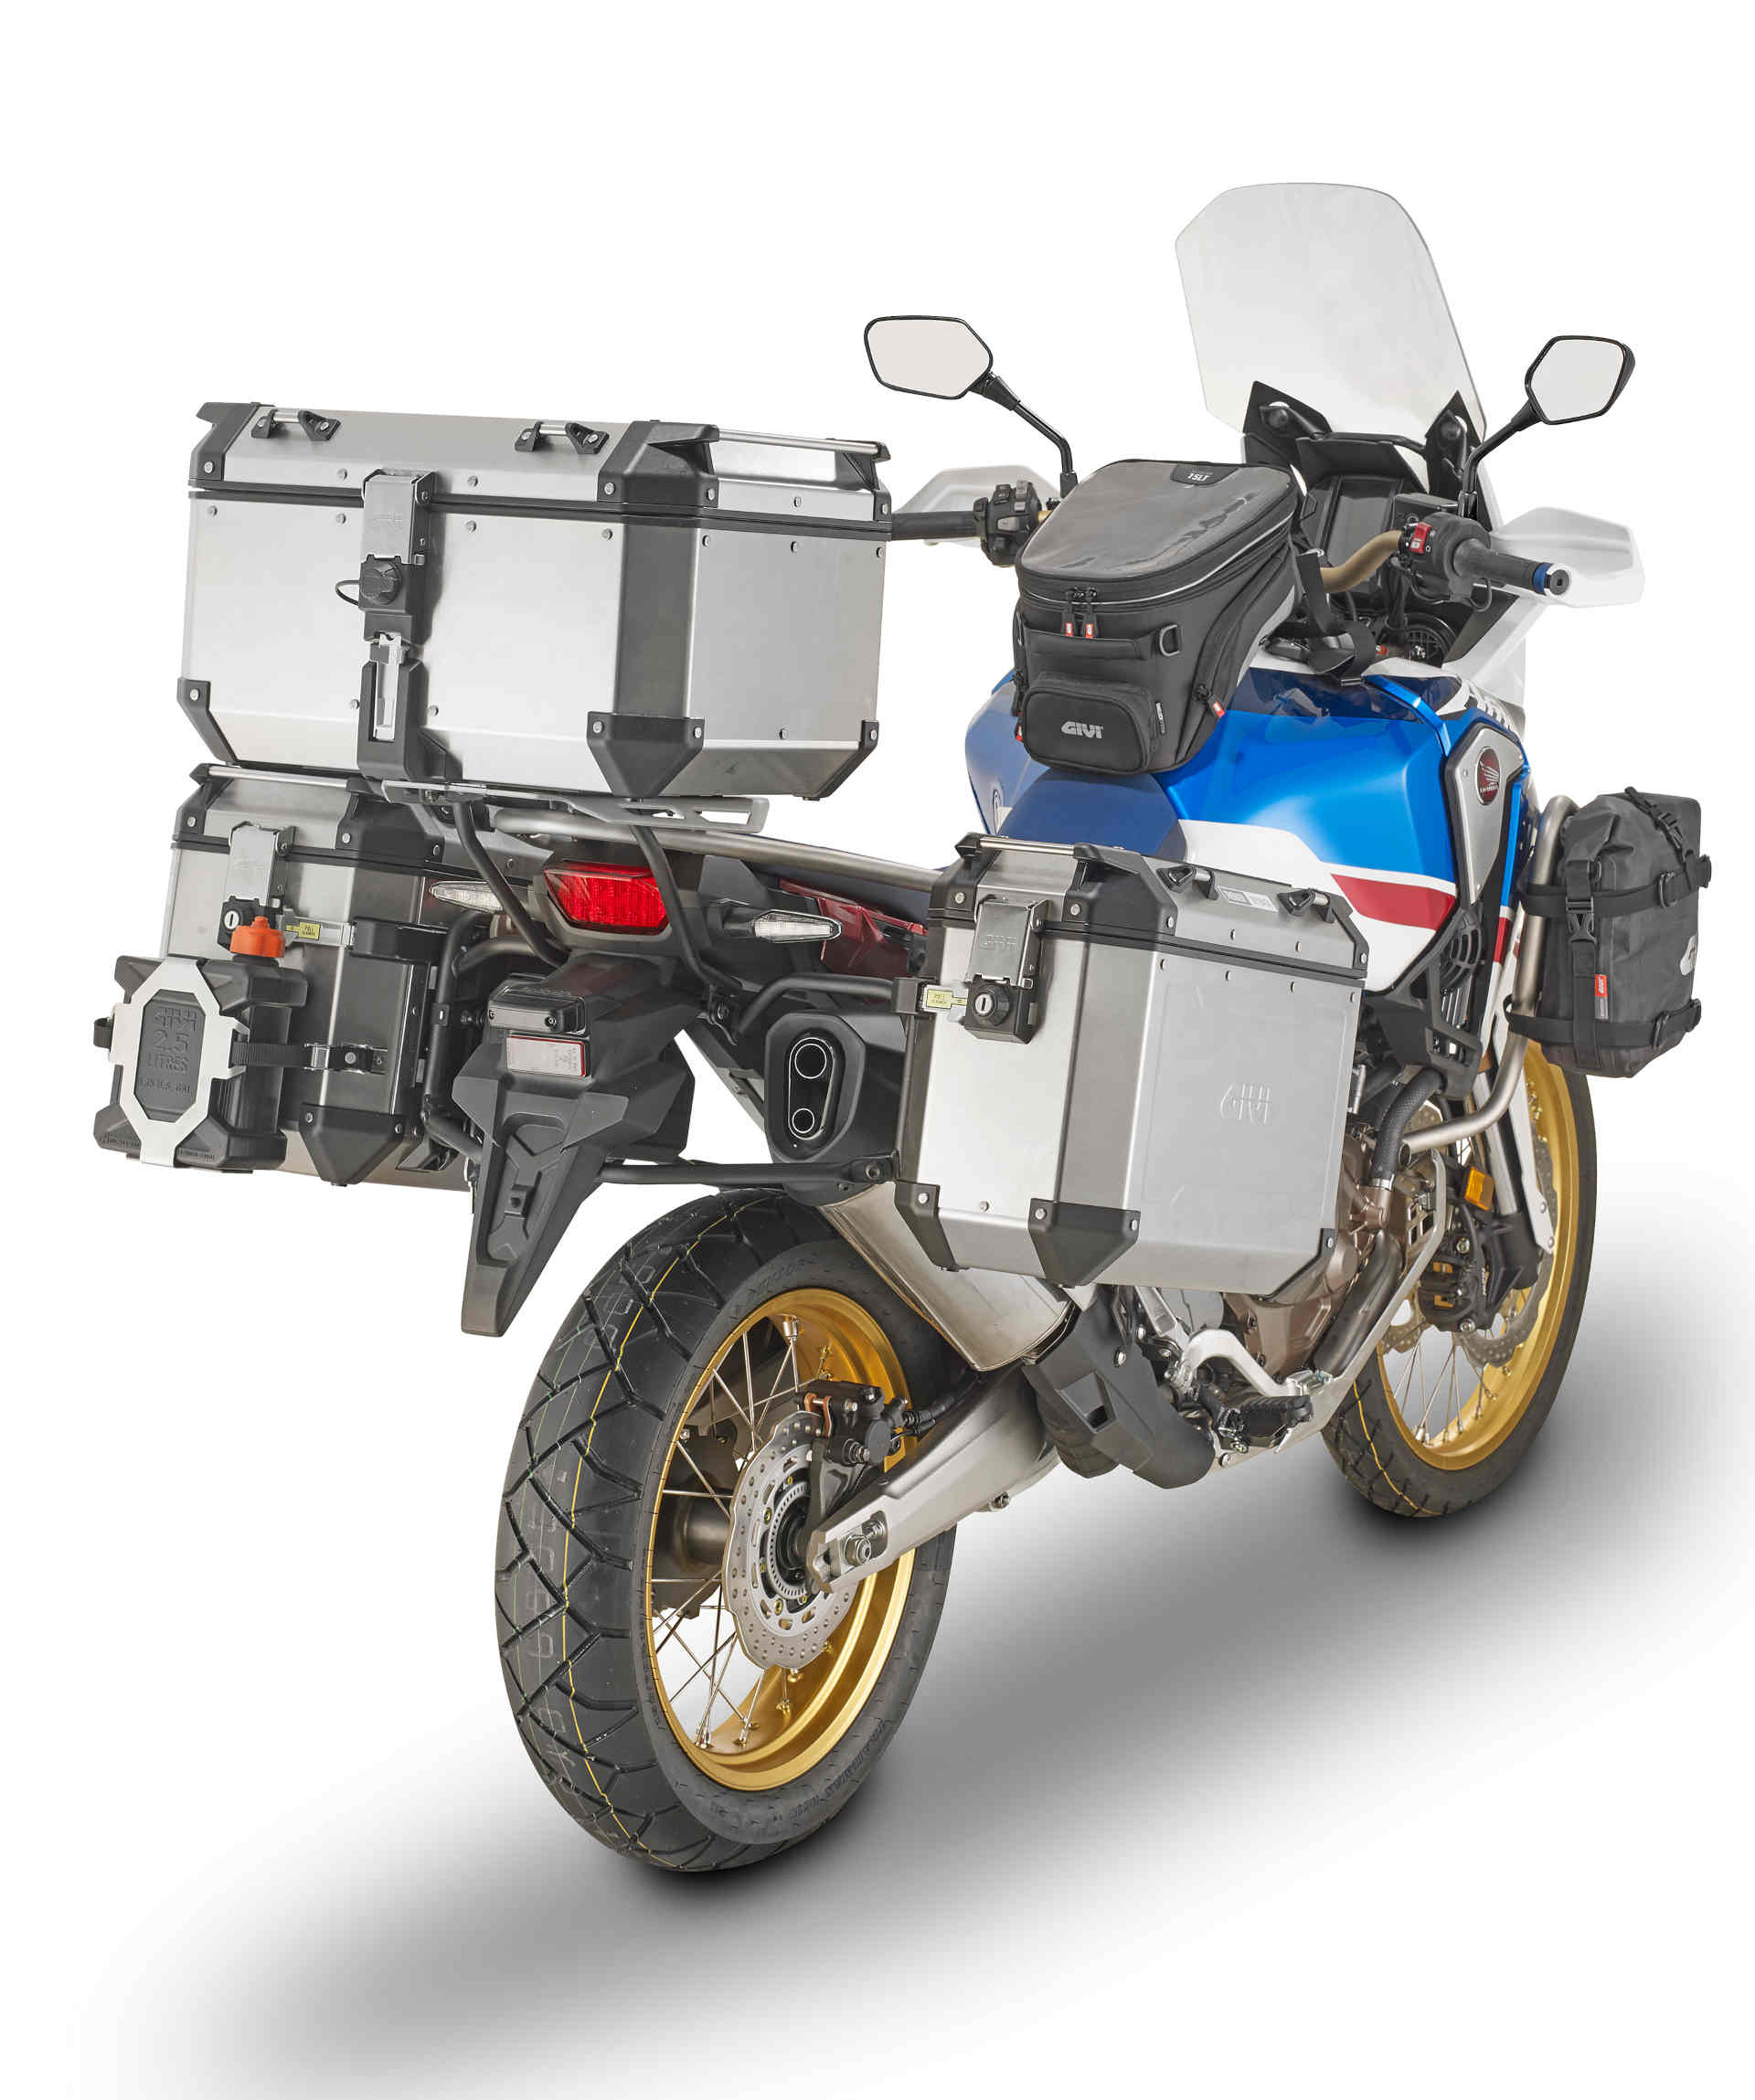 GIVI Stahrohr Side Case Carrier per Trekker Outback Monokey CAM SIDE Case per modelli Honda